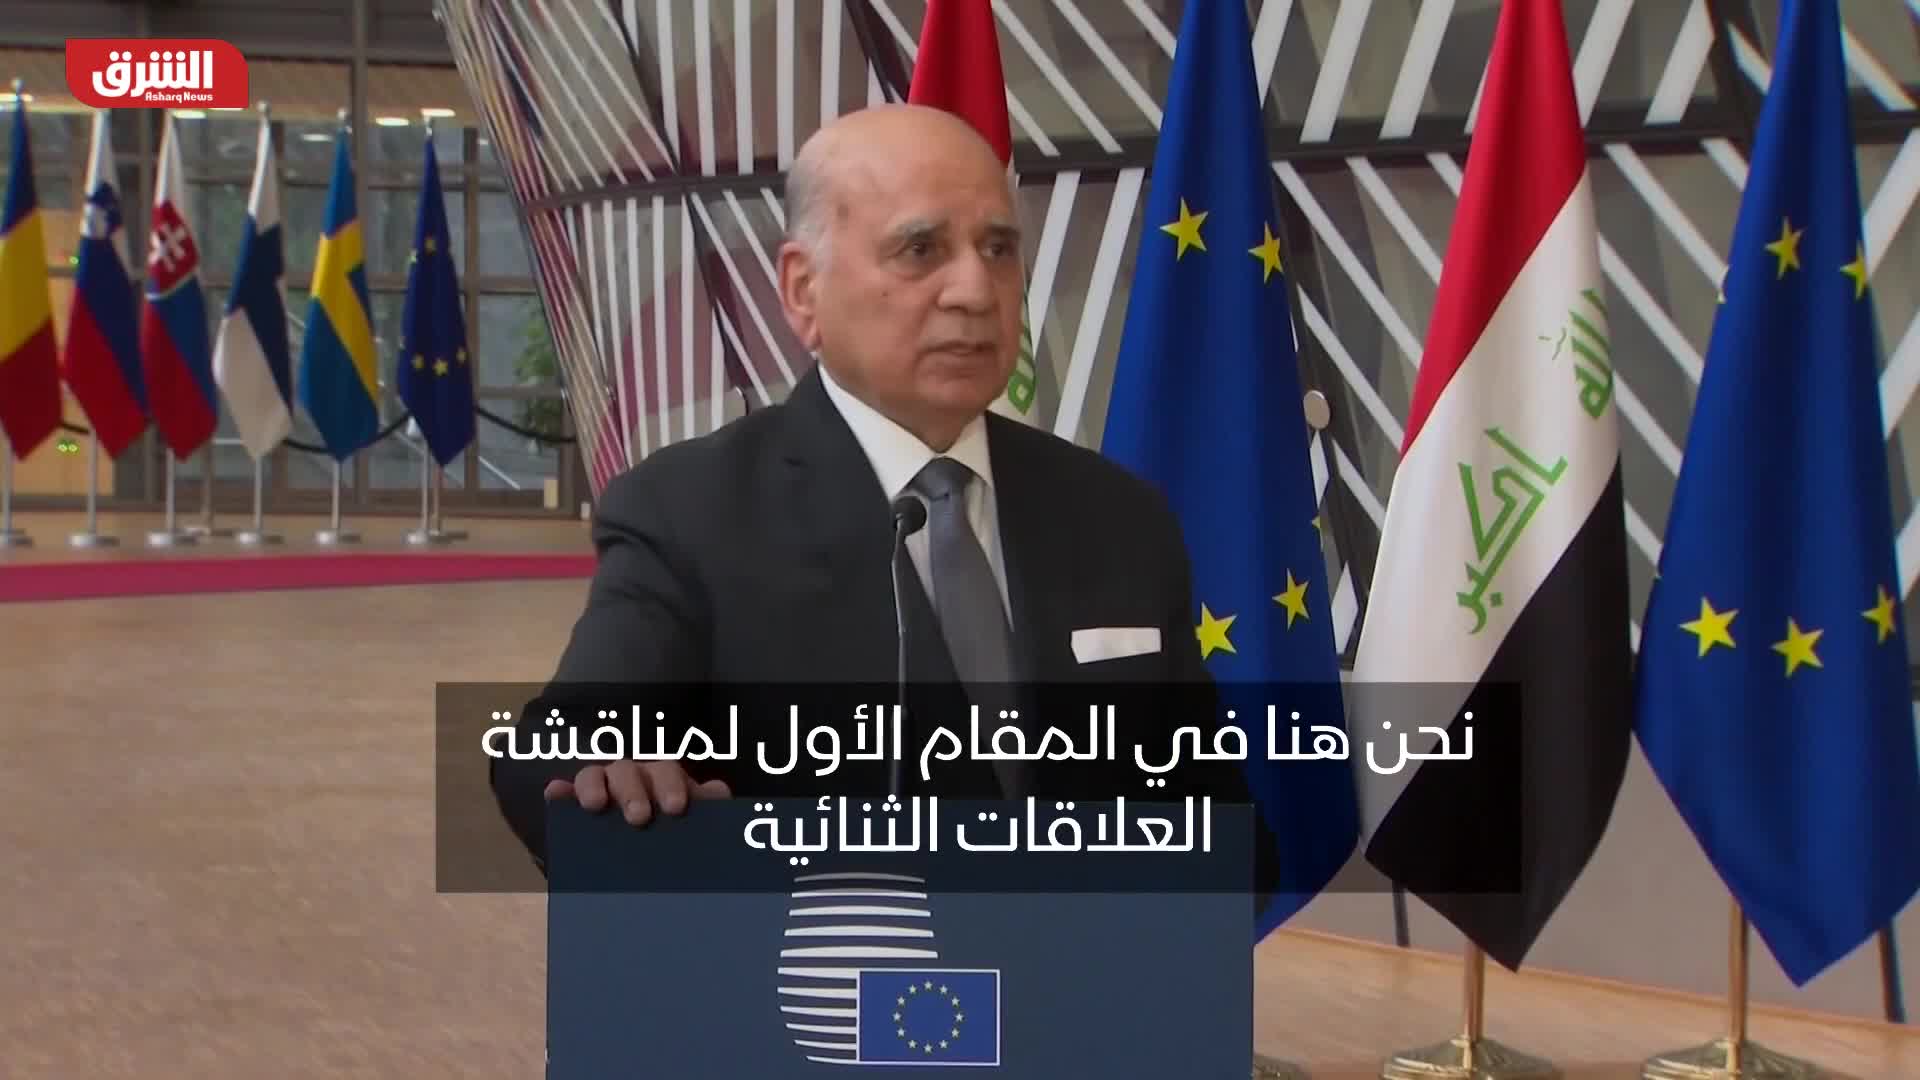 وزير الخارجية العراقي: العلاقة مع الاتحاد الأوروبي في إطار اتفاقية الشراكة والتعاون